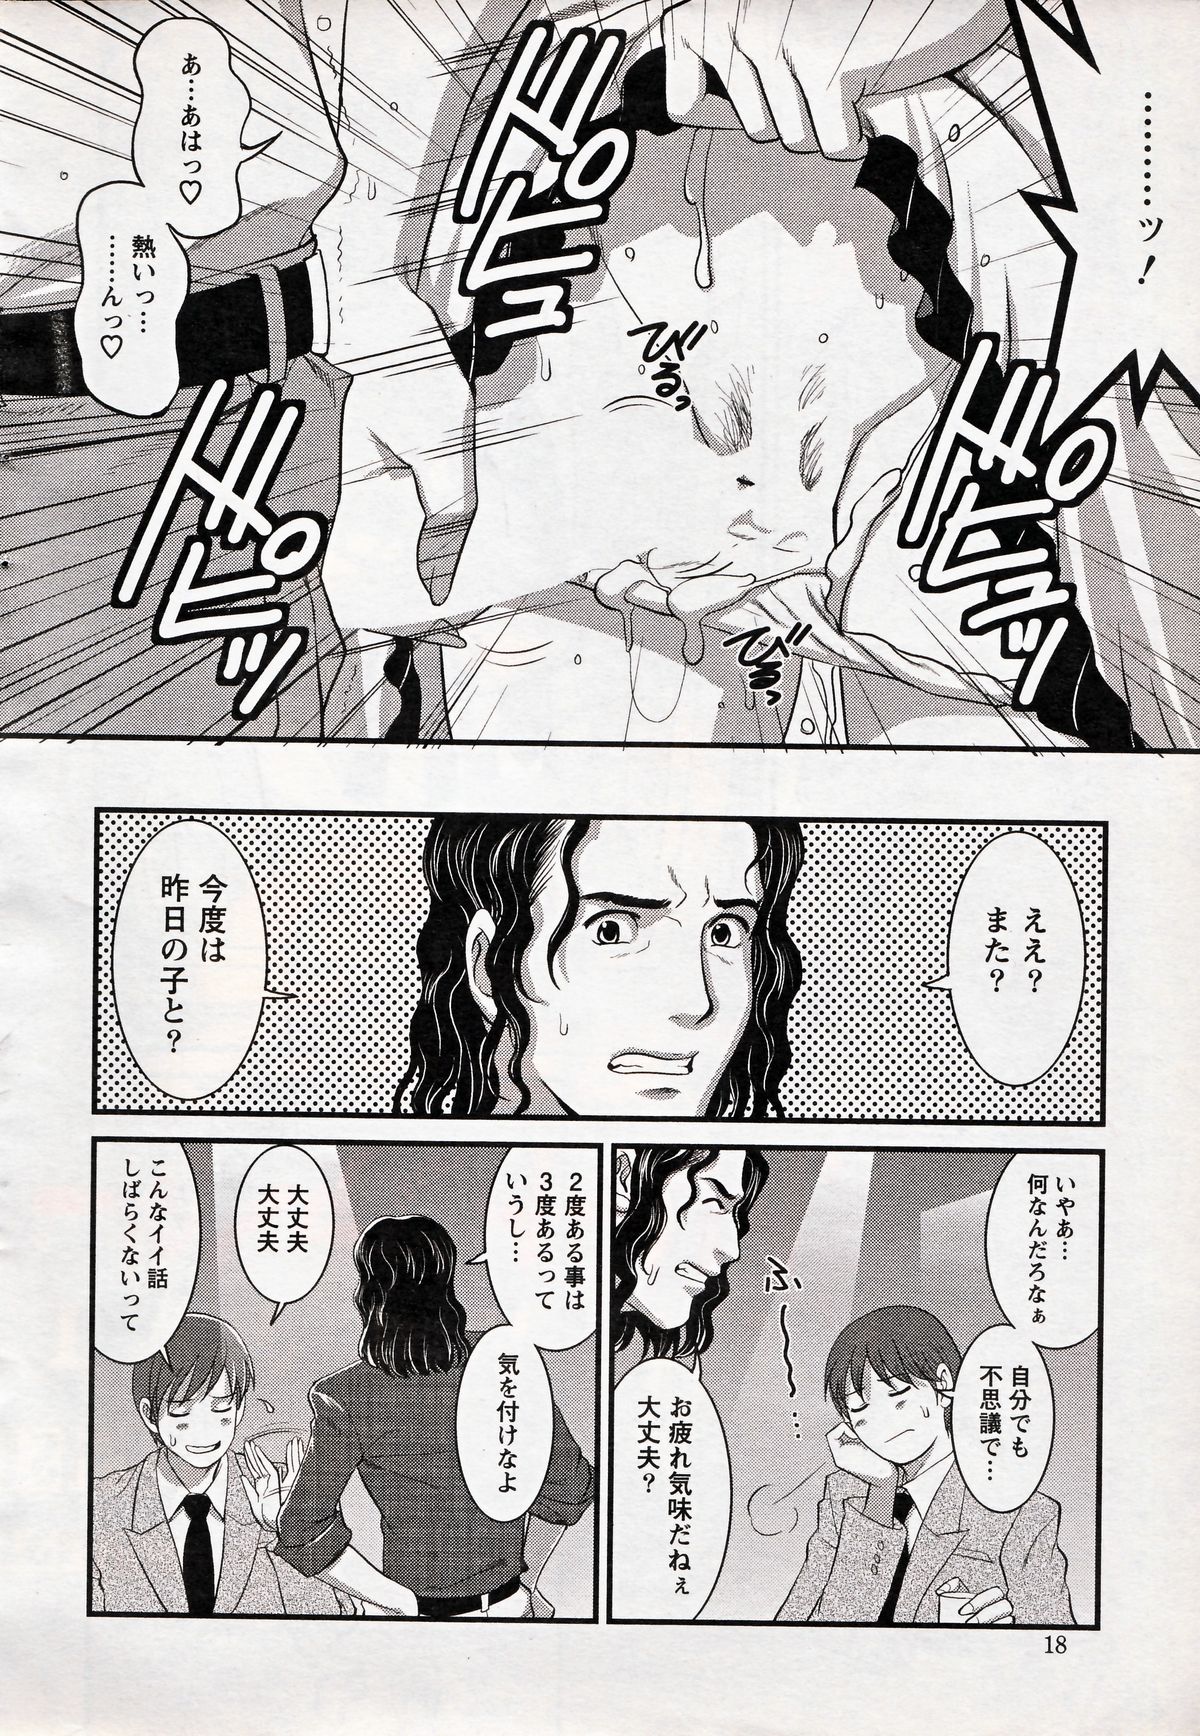 [Saigado] Haken no Muuko-san 17 page 16 full